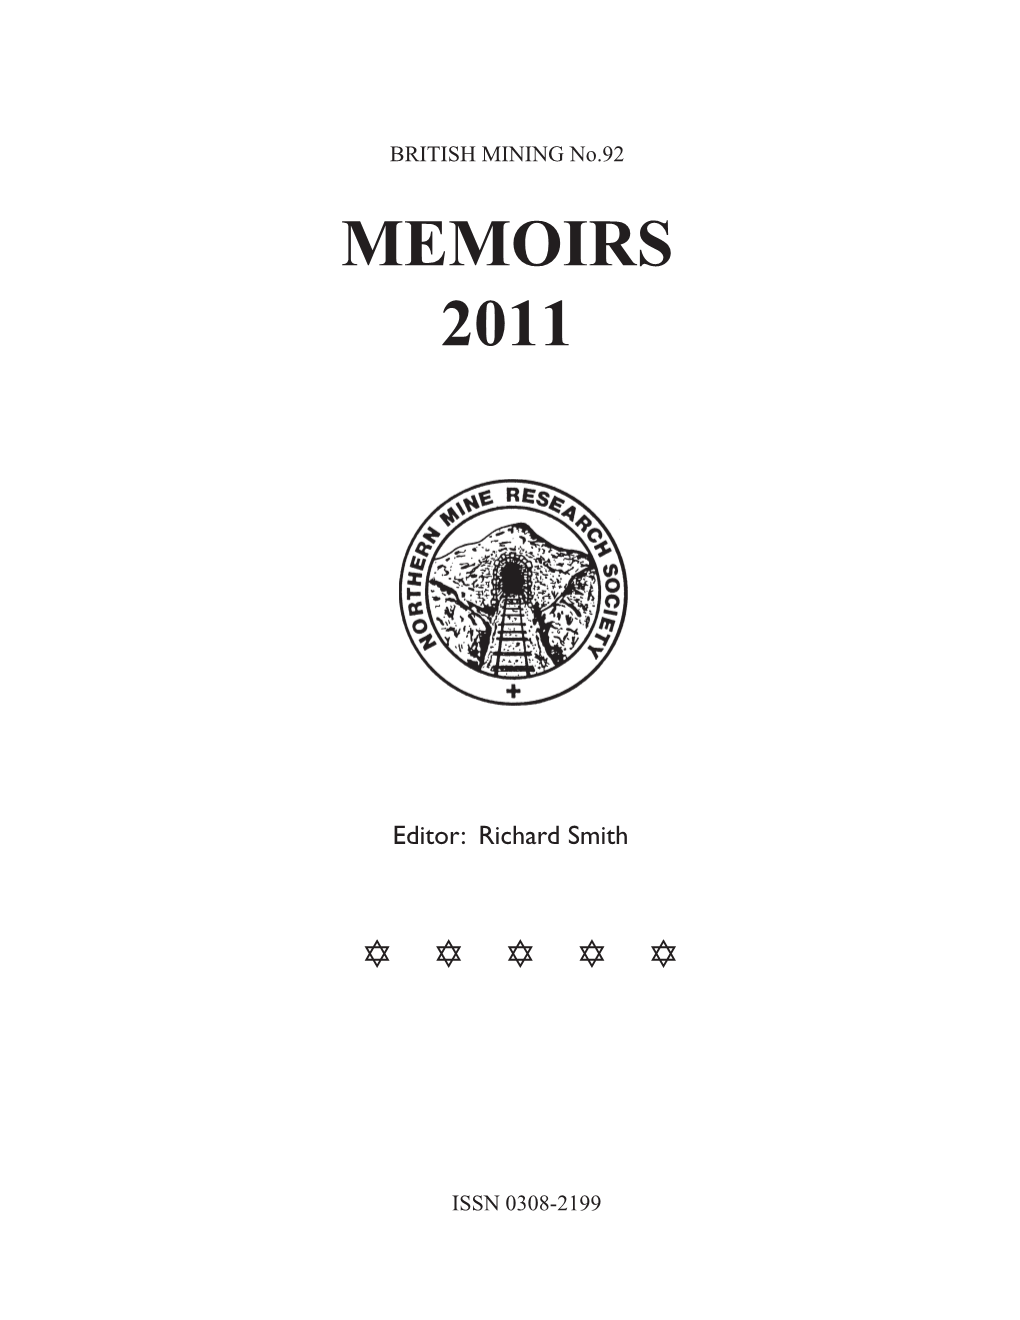 British Mining No 92 – Memoirs 2011